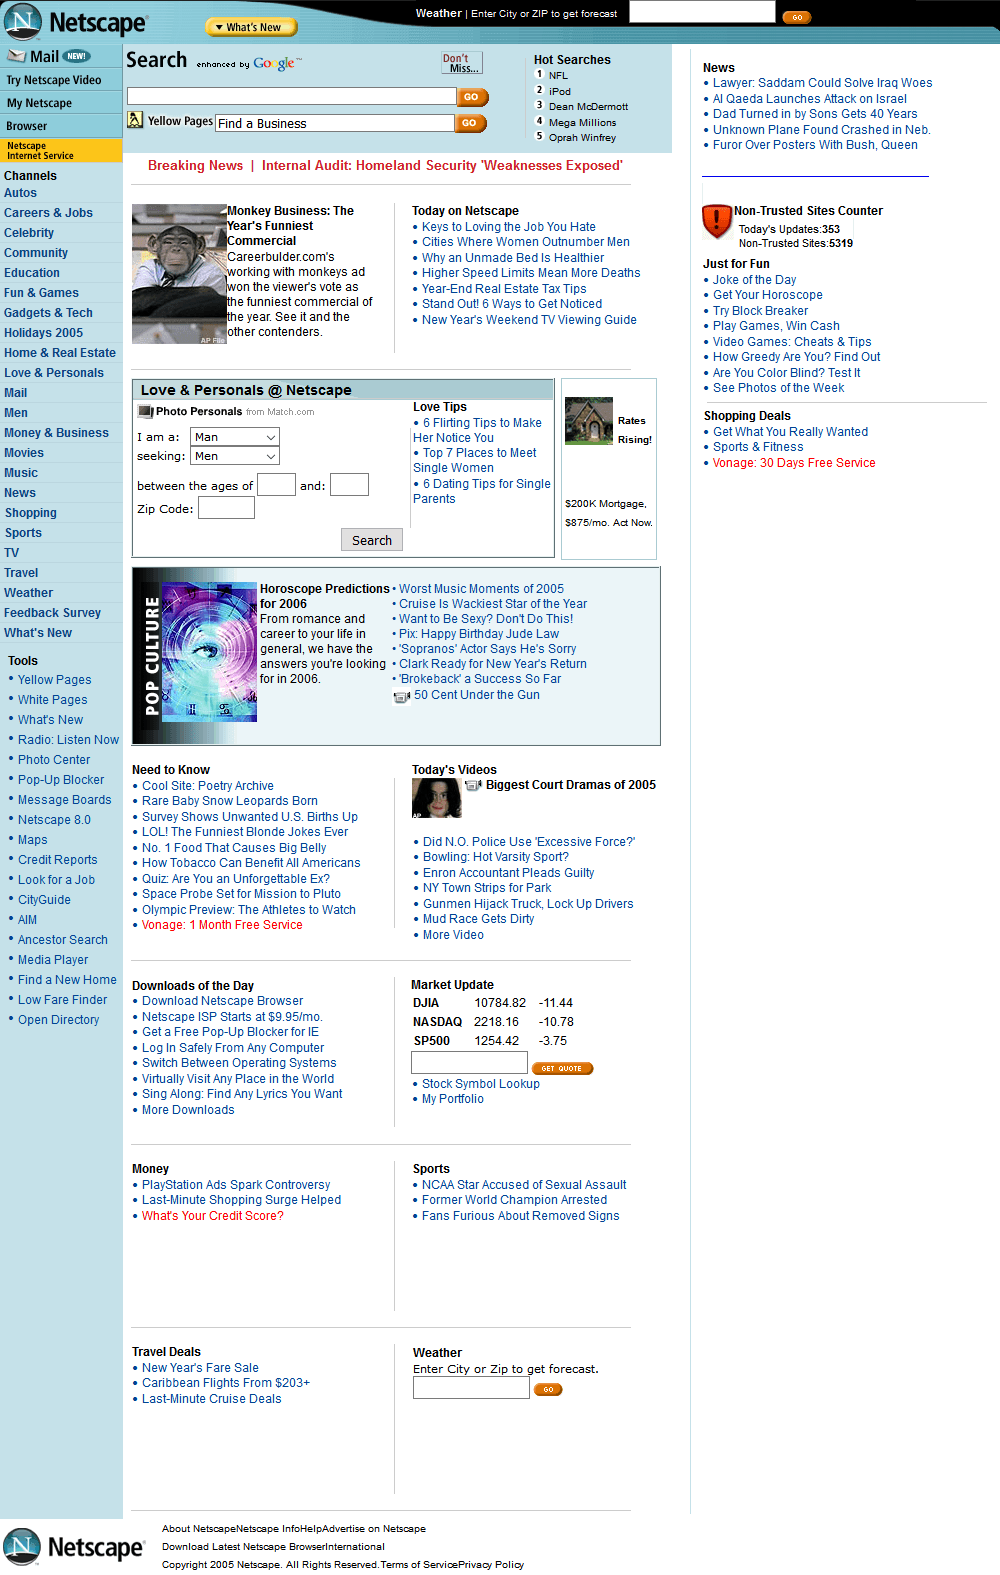 Netscape website in 2005